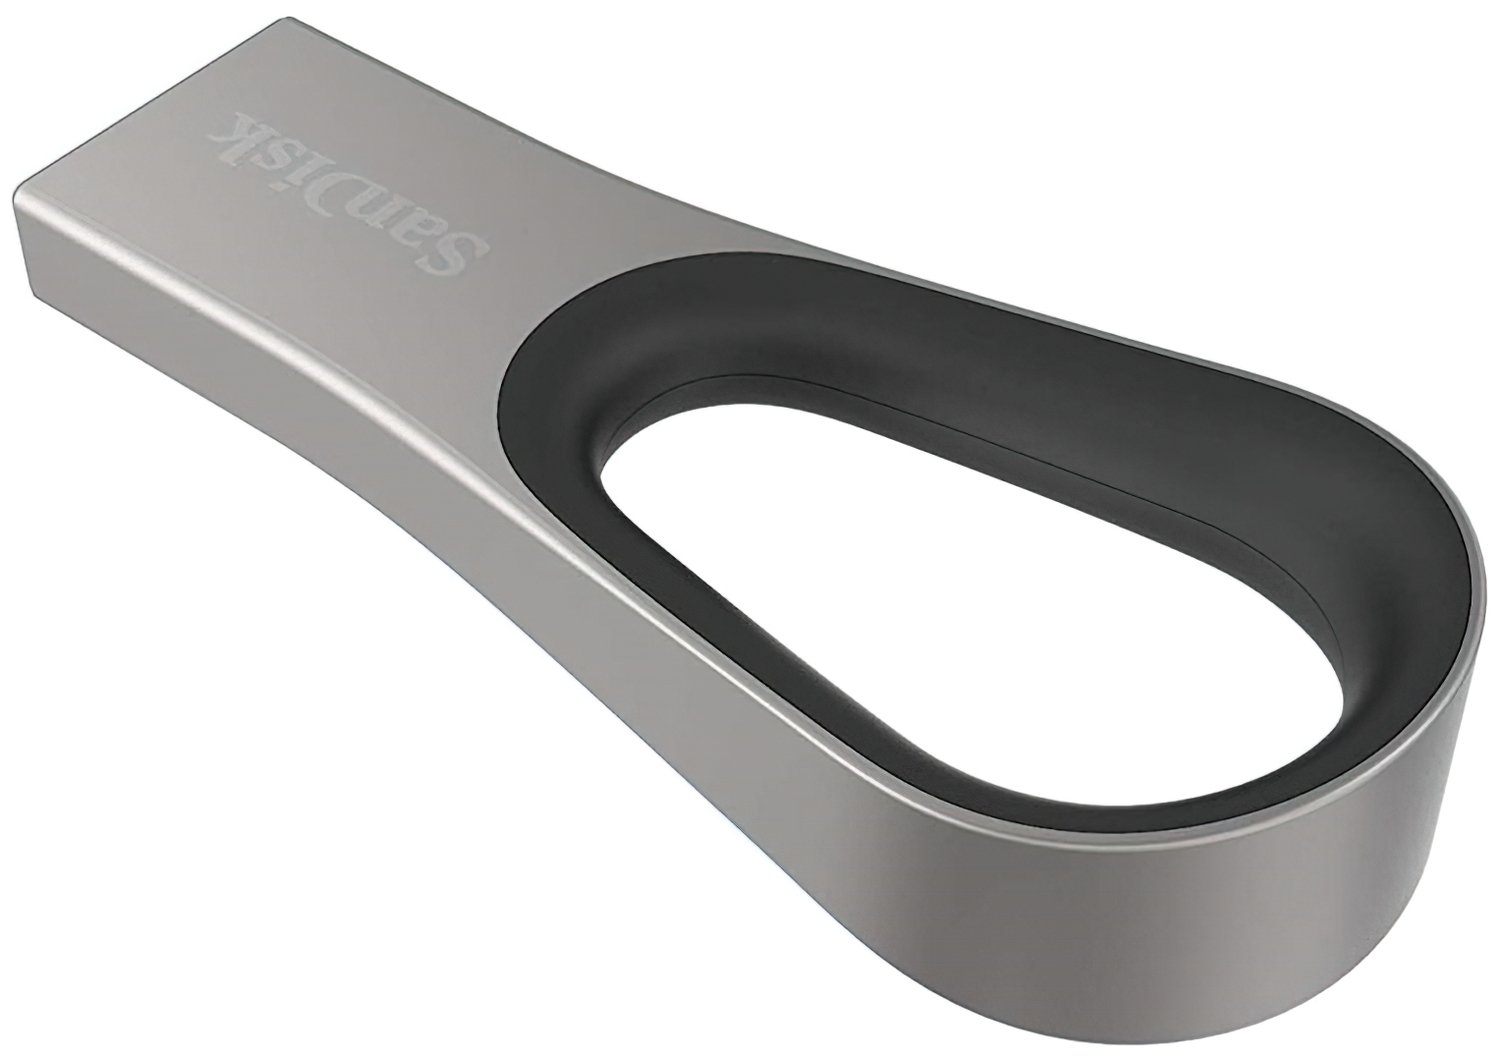  Накопичувач USB 3.0 SANDISK Ultra Loop 32GB (SDCZ93-032G-G46) фото